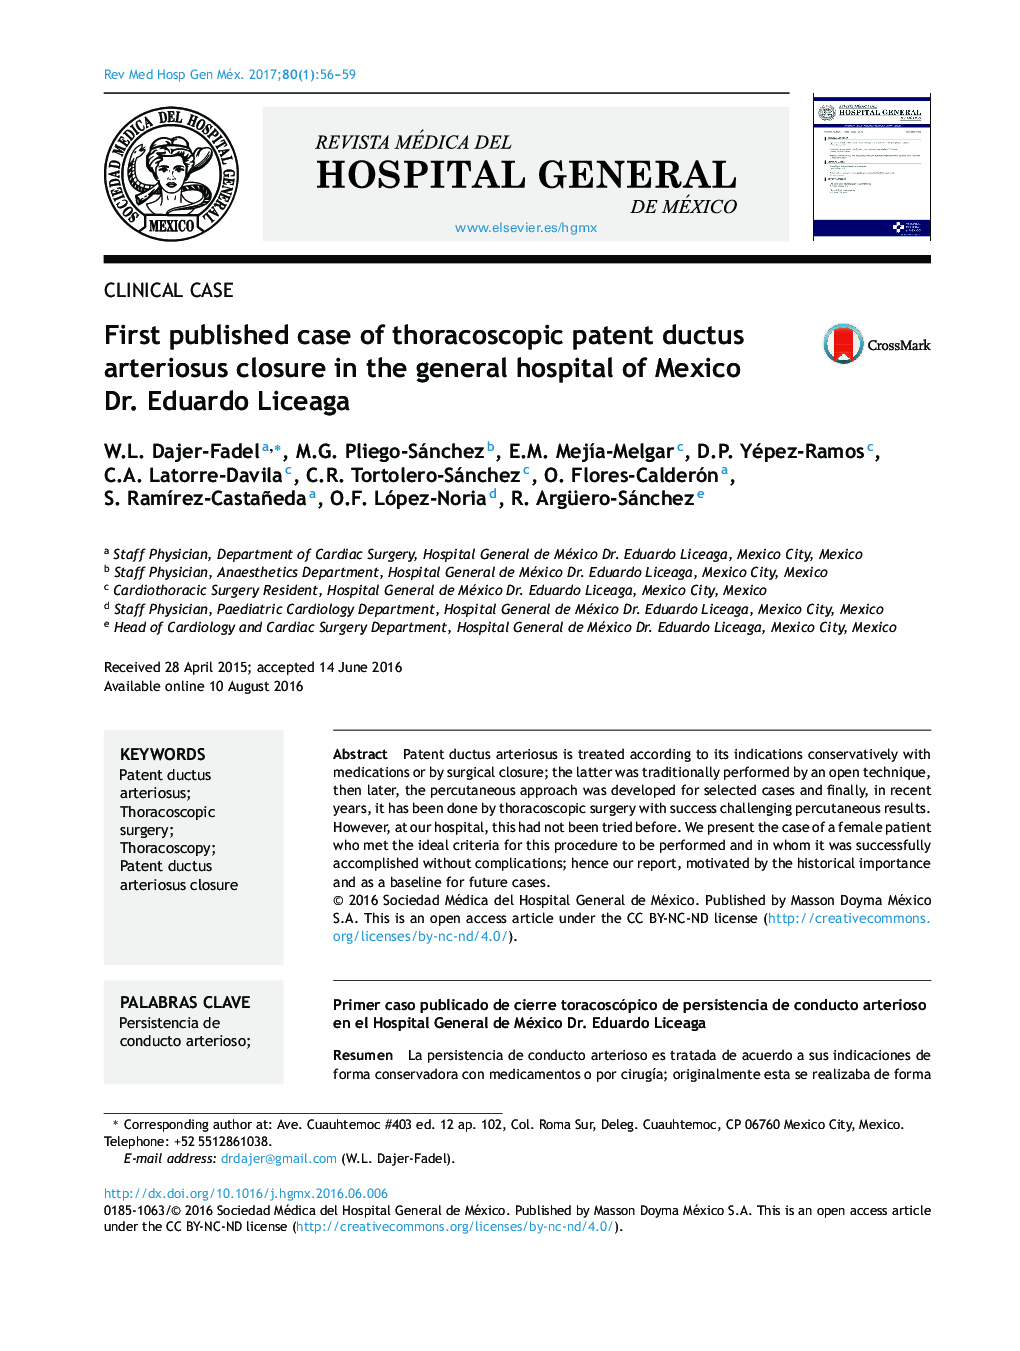 نخستین مورد منتشر شده در بیمارستان عمومی مکزیک، دکتر ادواردو لیسیاگا 